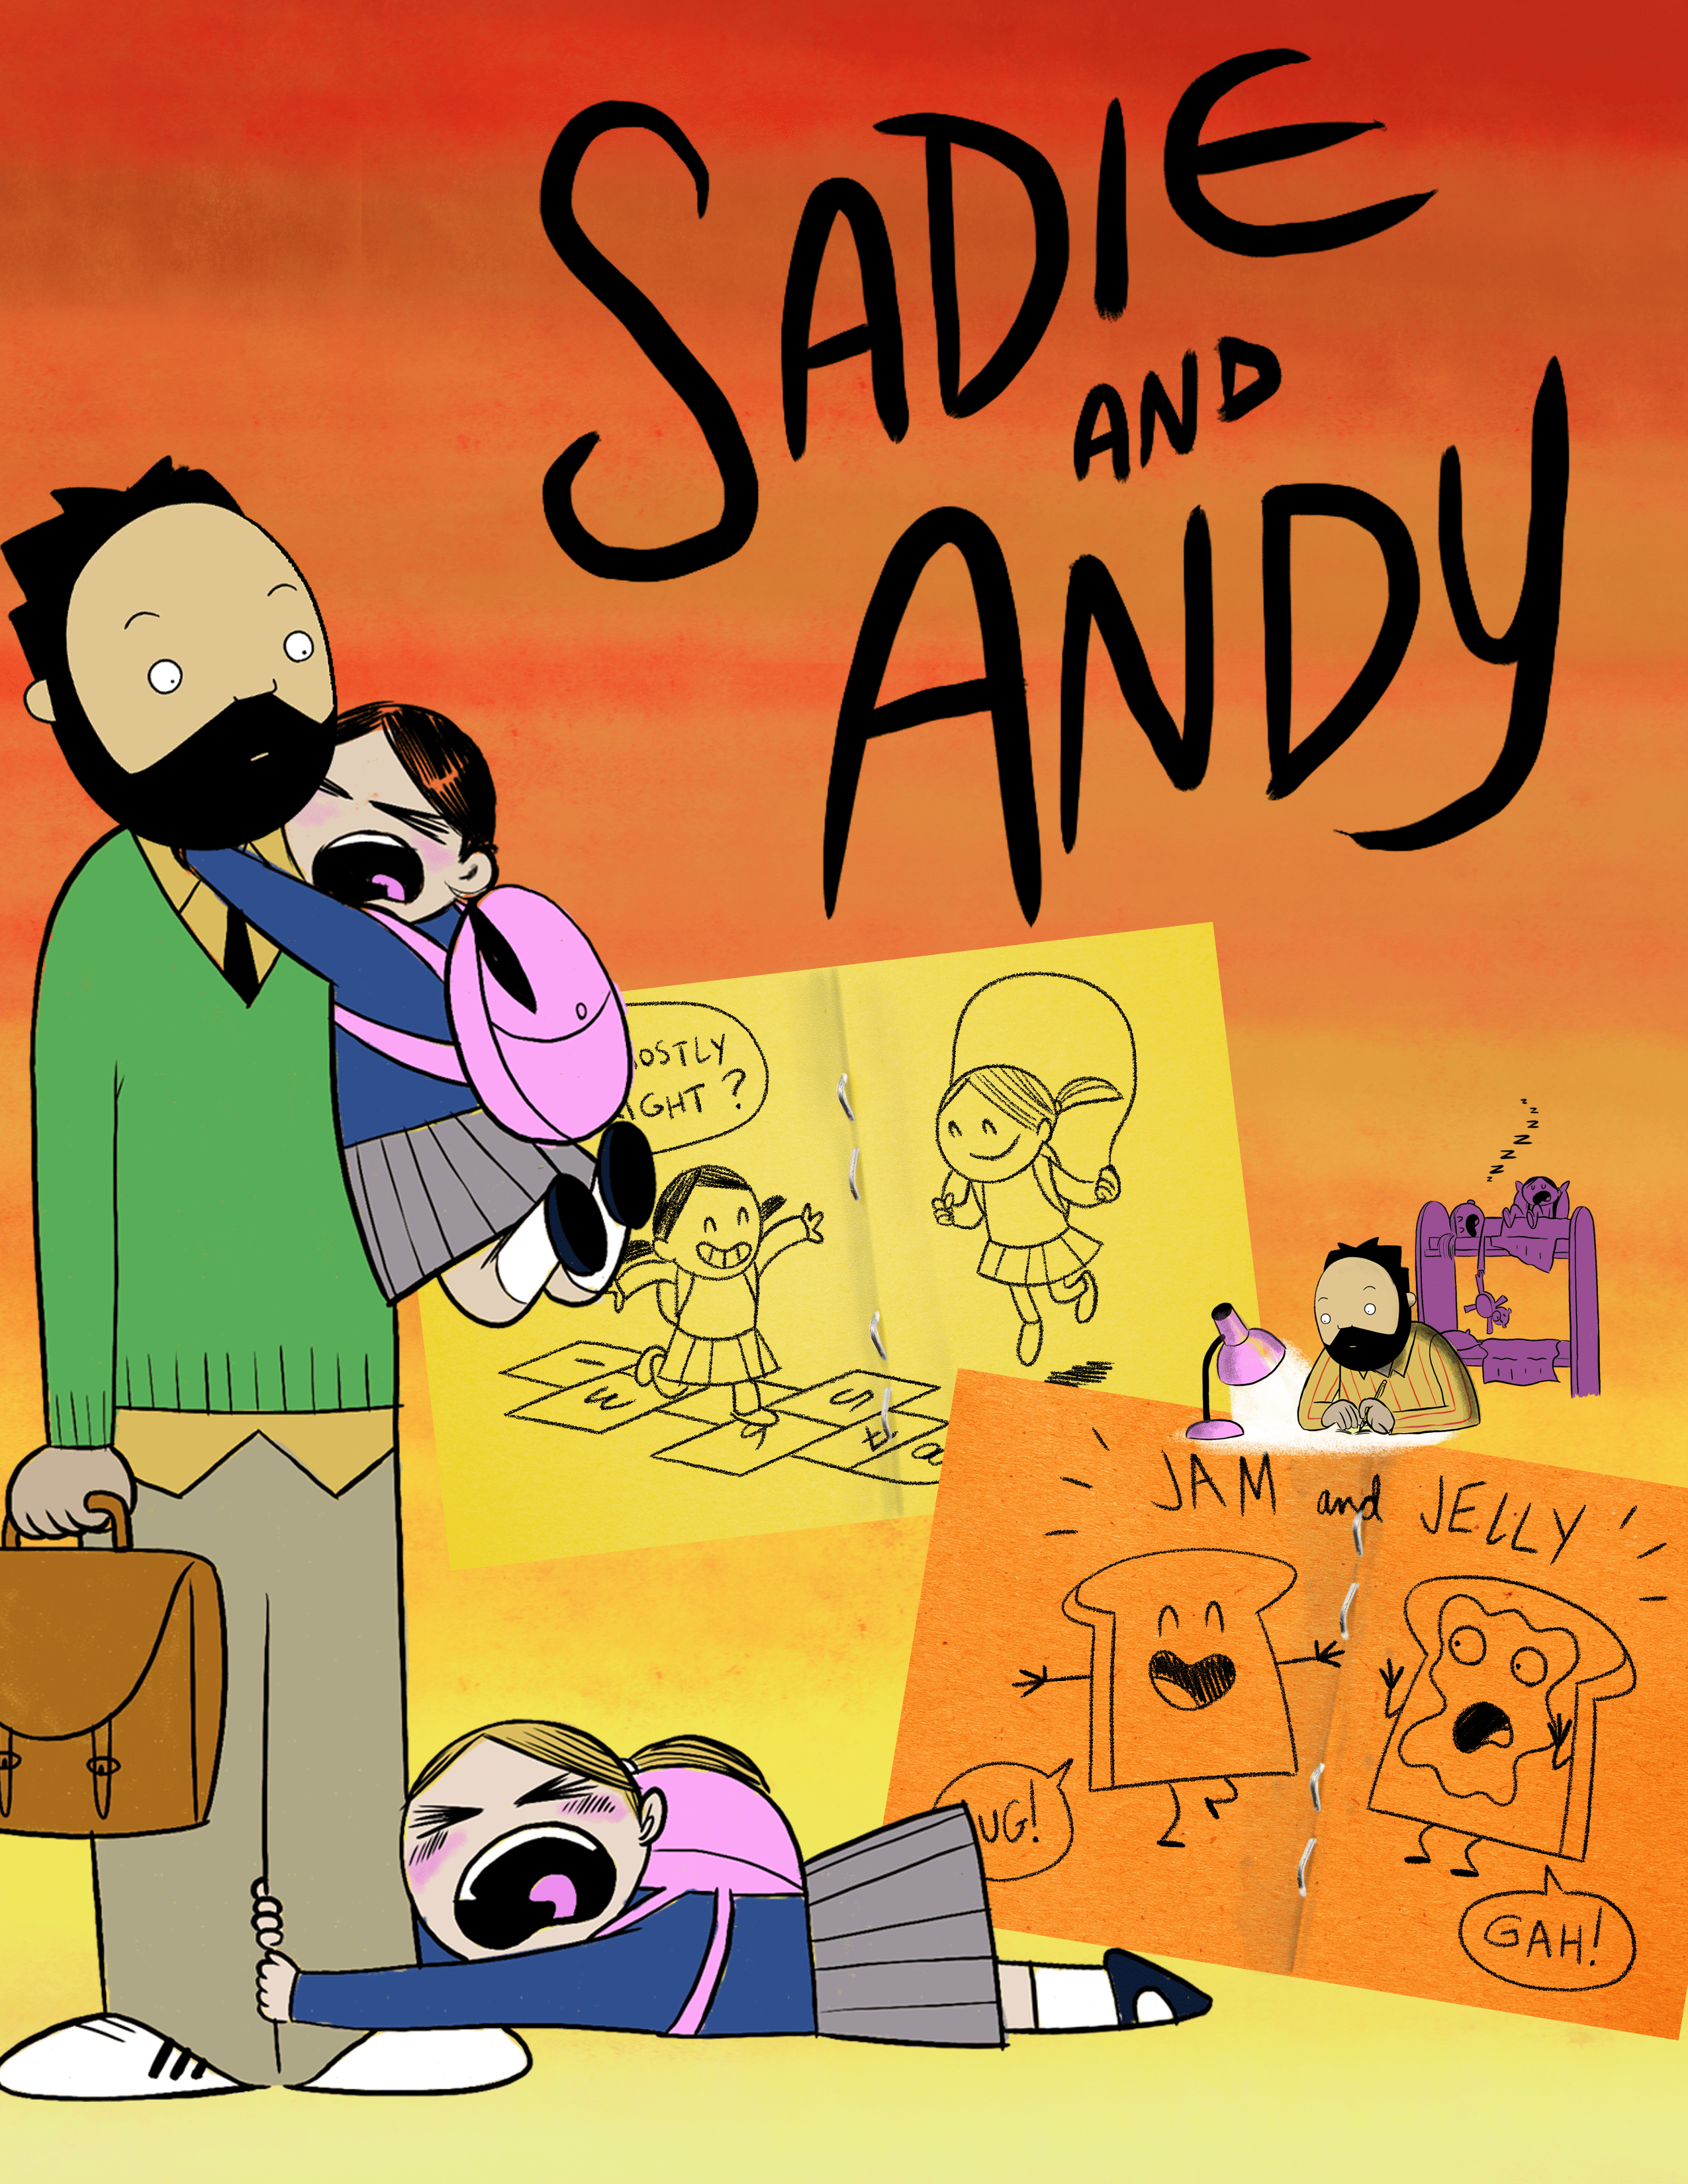 SADIE & ANDY